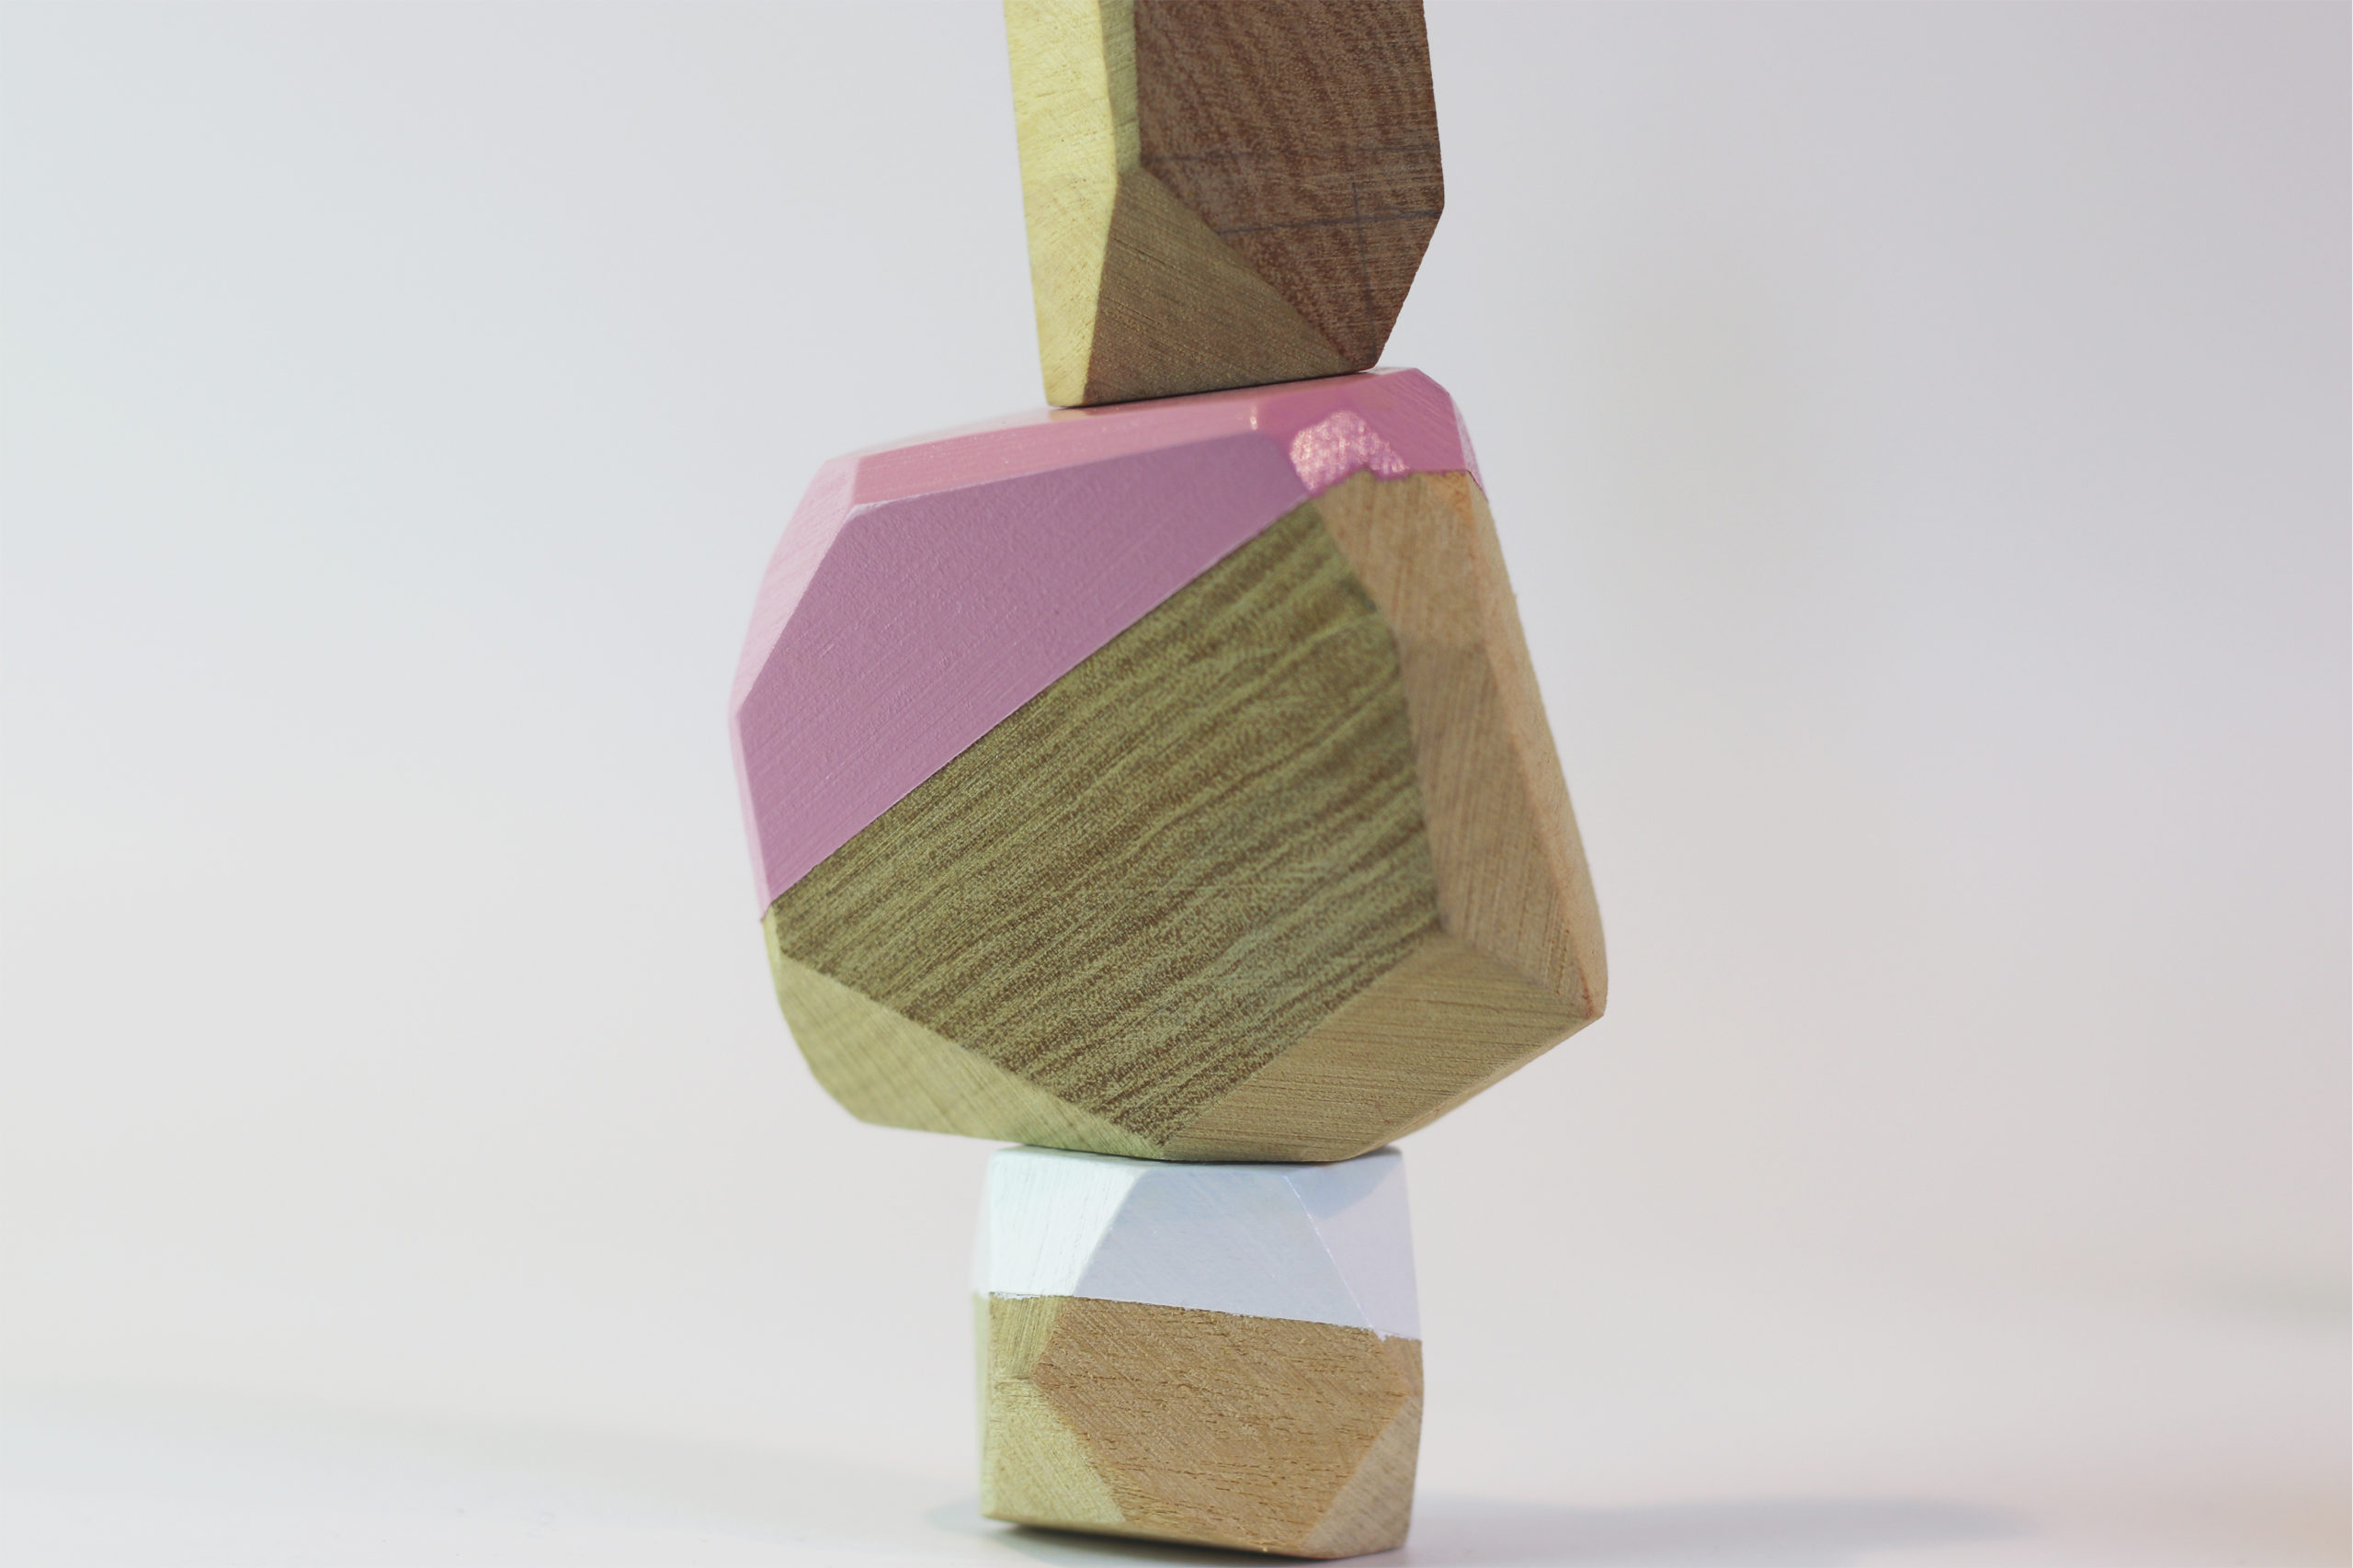 Jeux d'équilibre en pierre de bois de chêne.